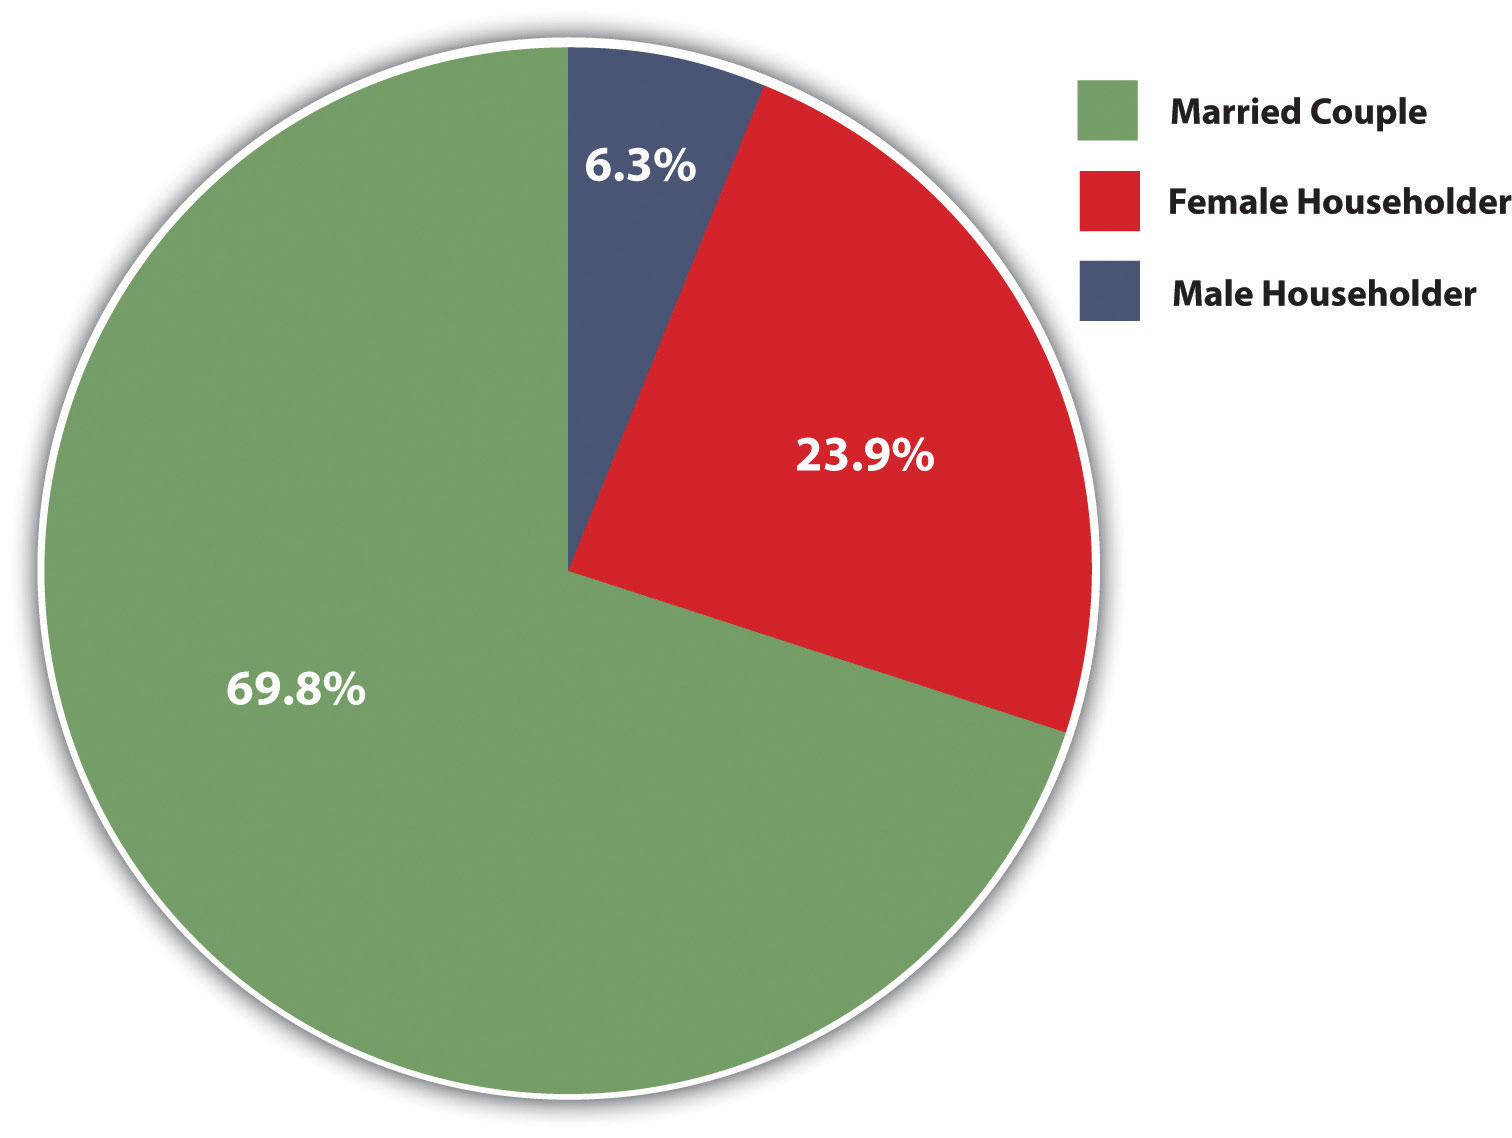 Круговая диаграмма семейных домохозяйств с детьми в возрасте до 18 лет: 69,8% составляют супружеские пары, 23,9% - домохозяйки и 6,3% - мужчины.